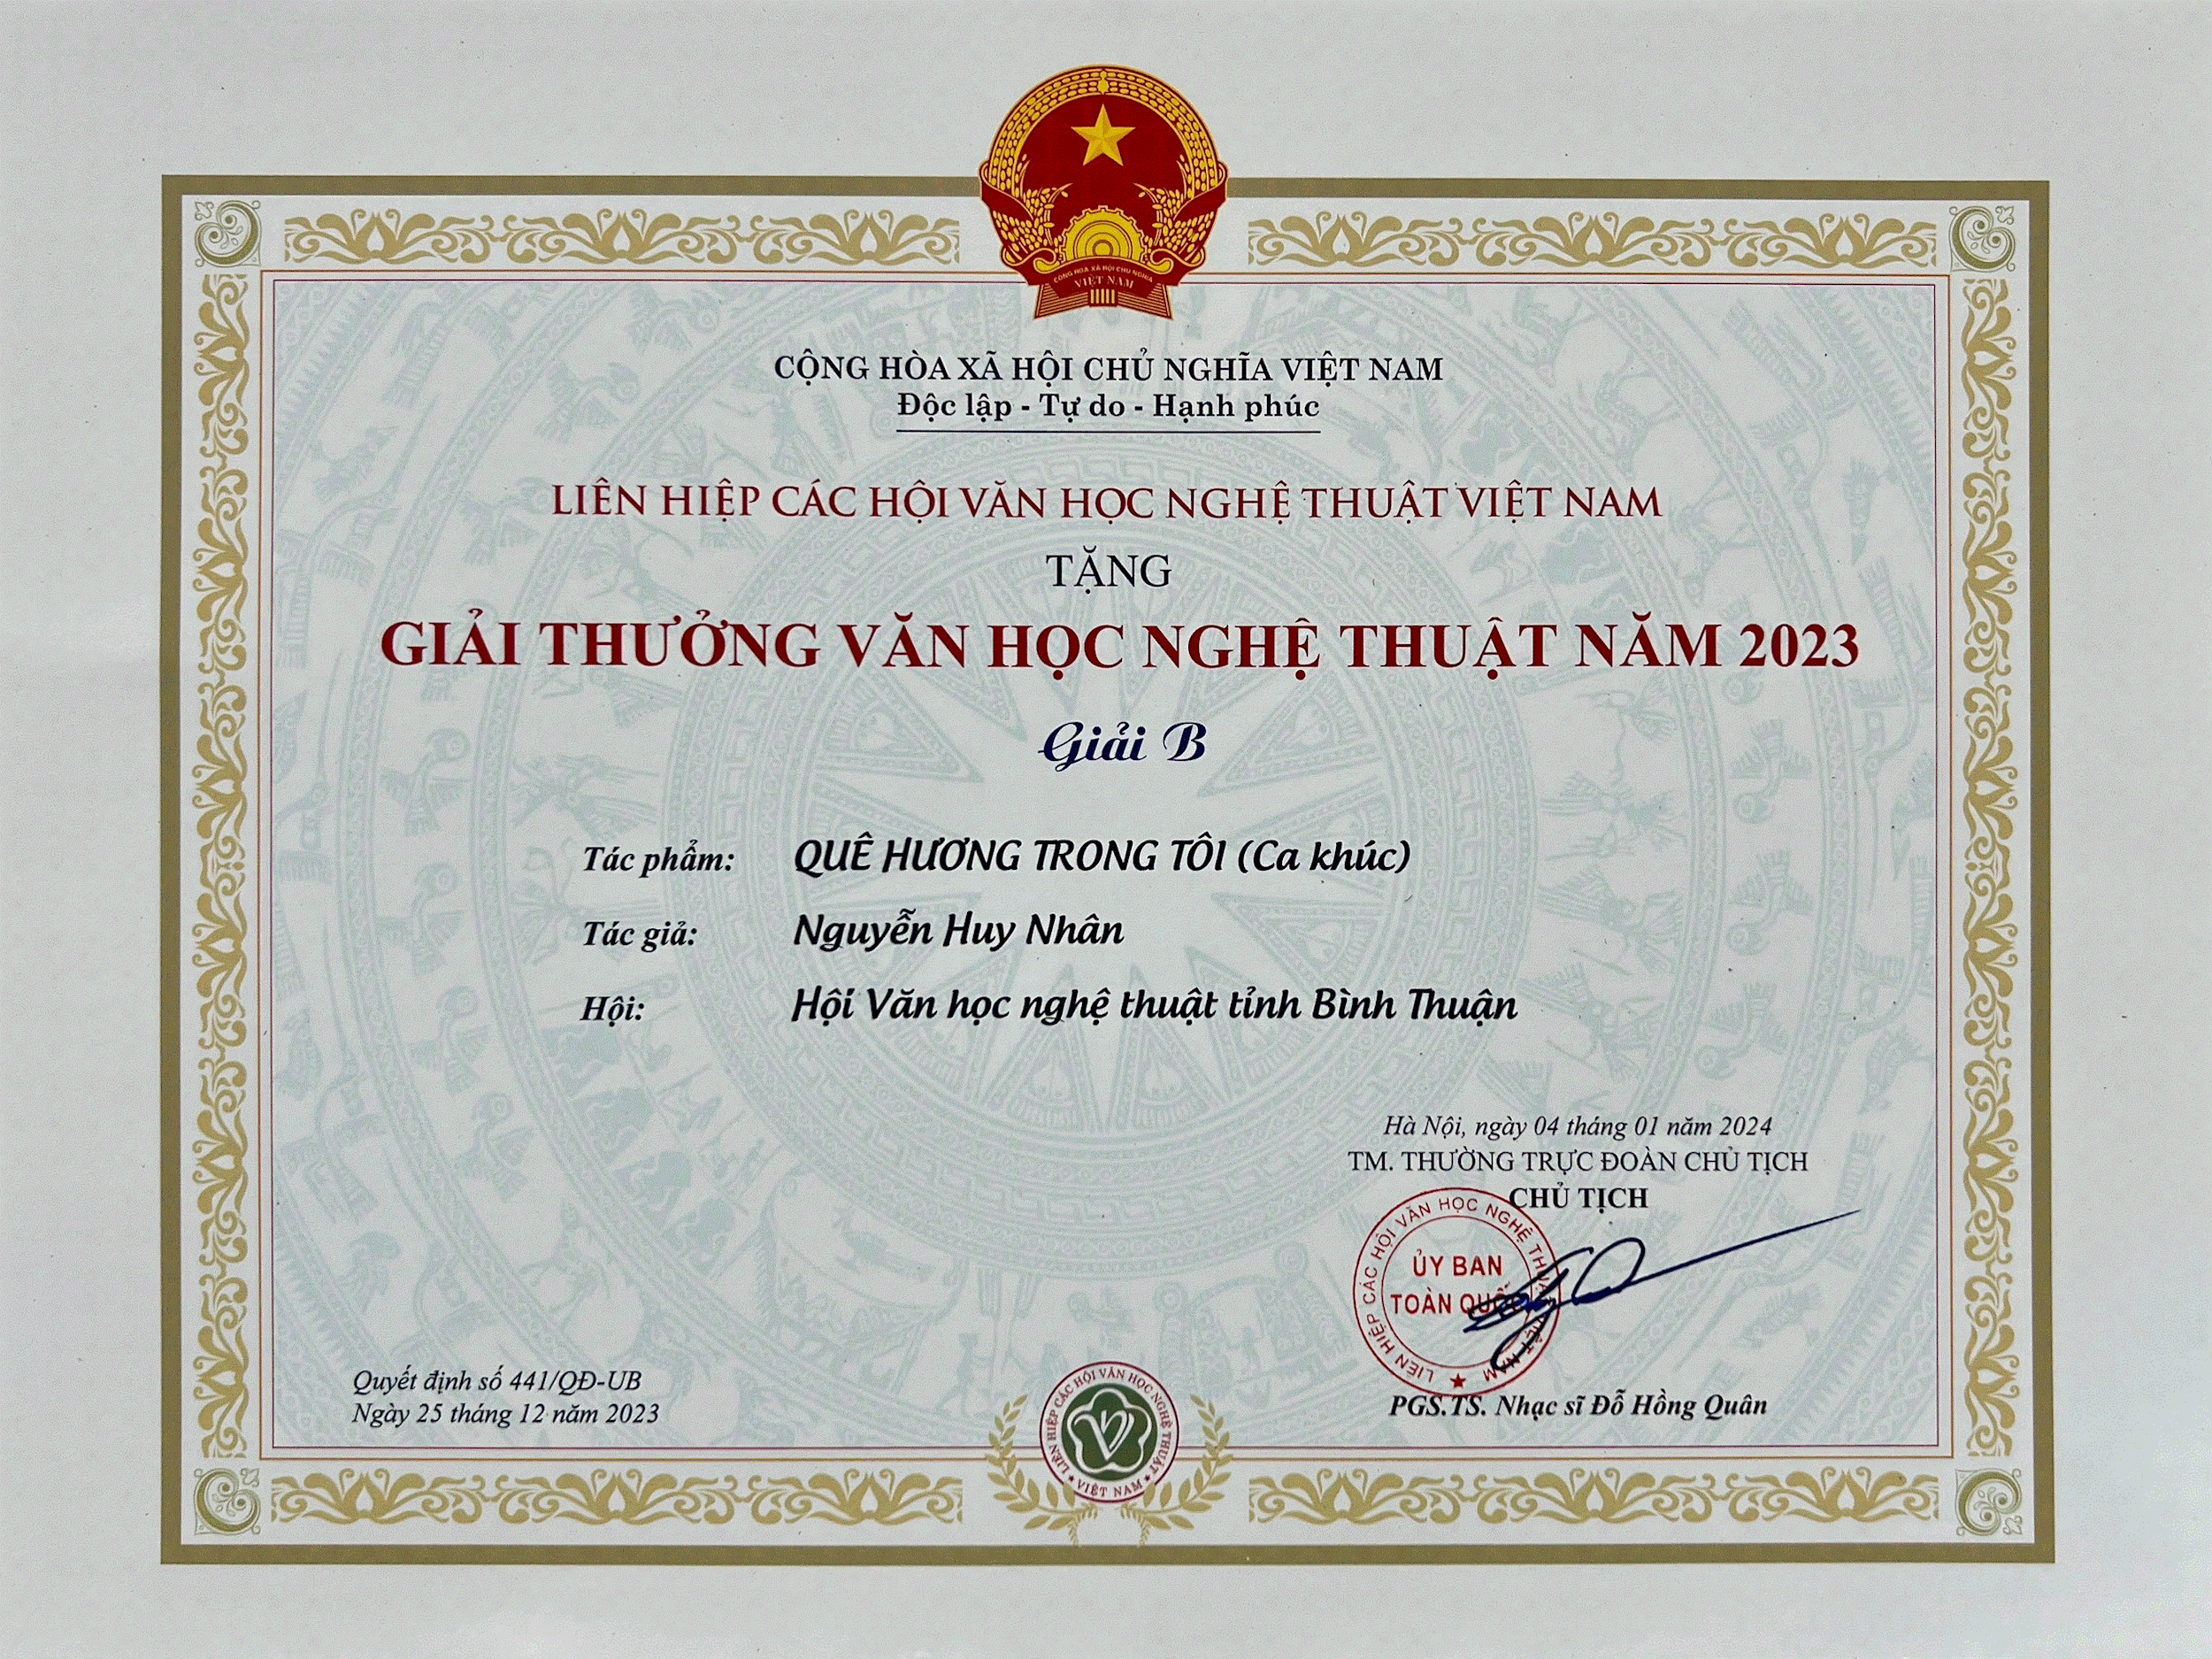 Nhạc sĩ Nguyễn Huy Nhân đoạt giải B Giải thưởng Văn học nghệ thuật năm 2023